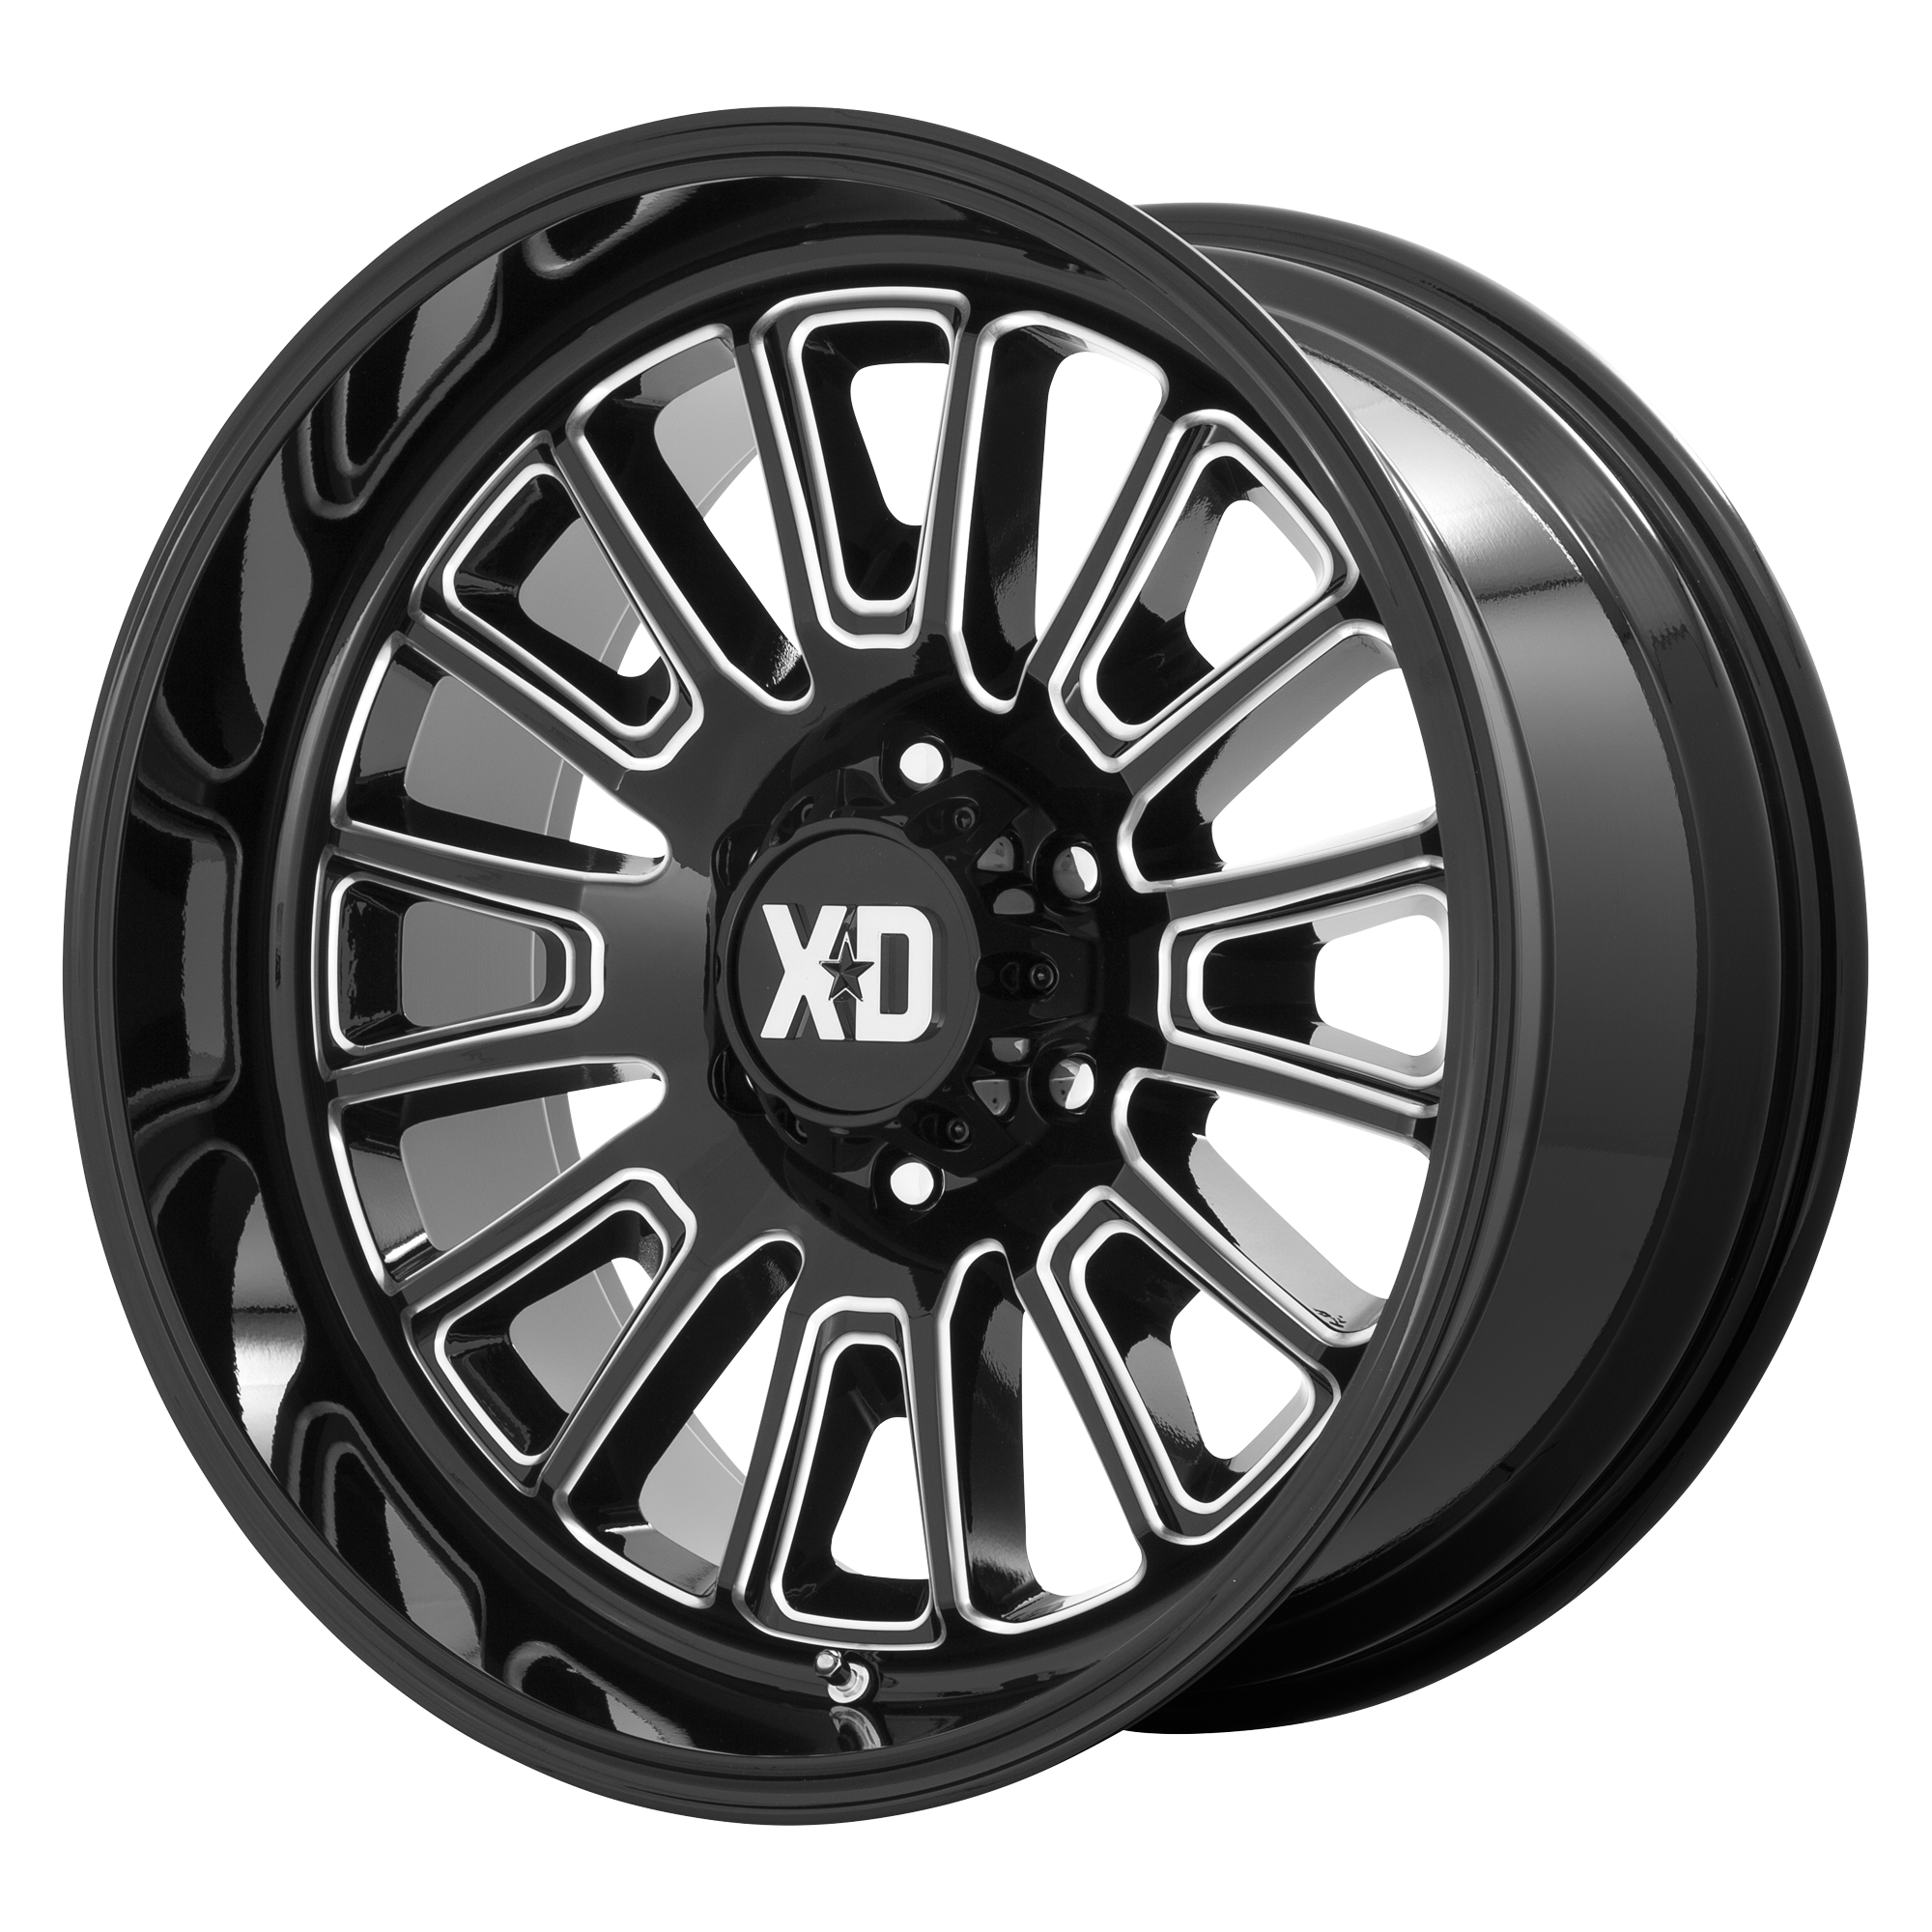 XD 22"x12" Non-Chrome Gloss Black Milled Custom Wheel ARSWCWXD86422288344N